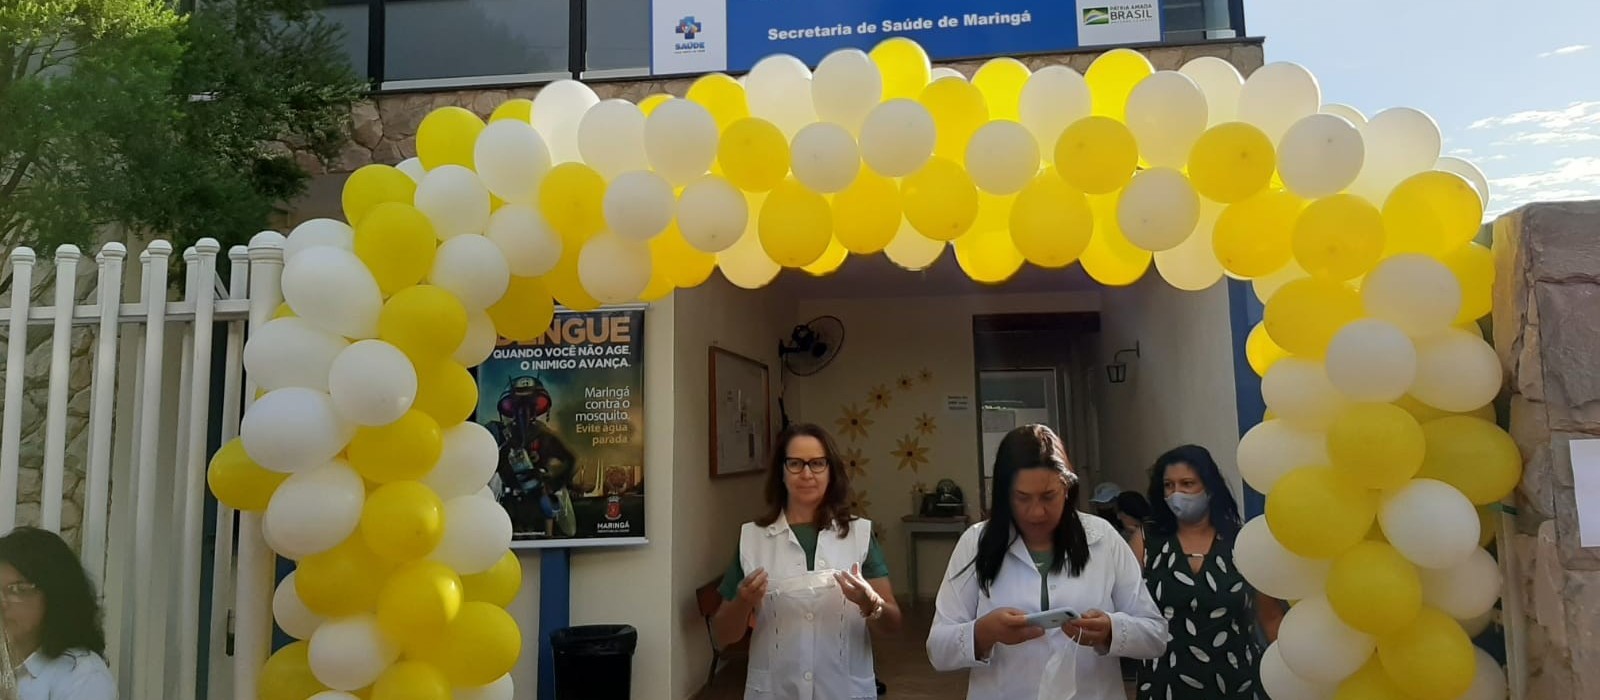 Maringá realiza o "Dia D" de imunização contra gripe e sarampo